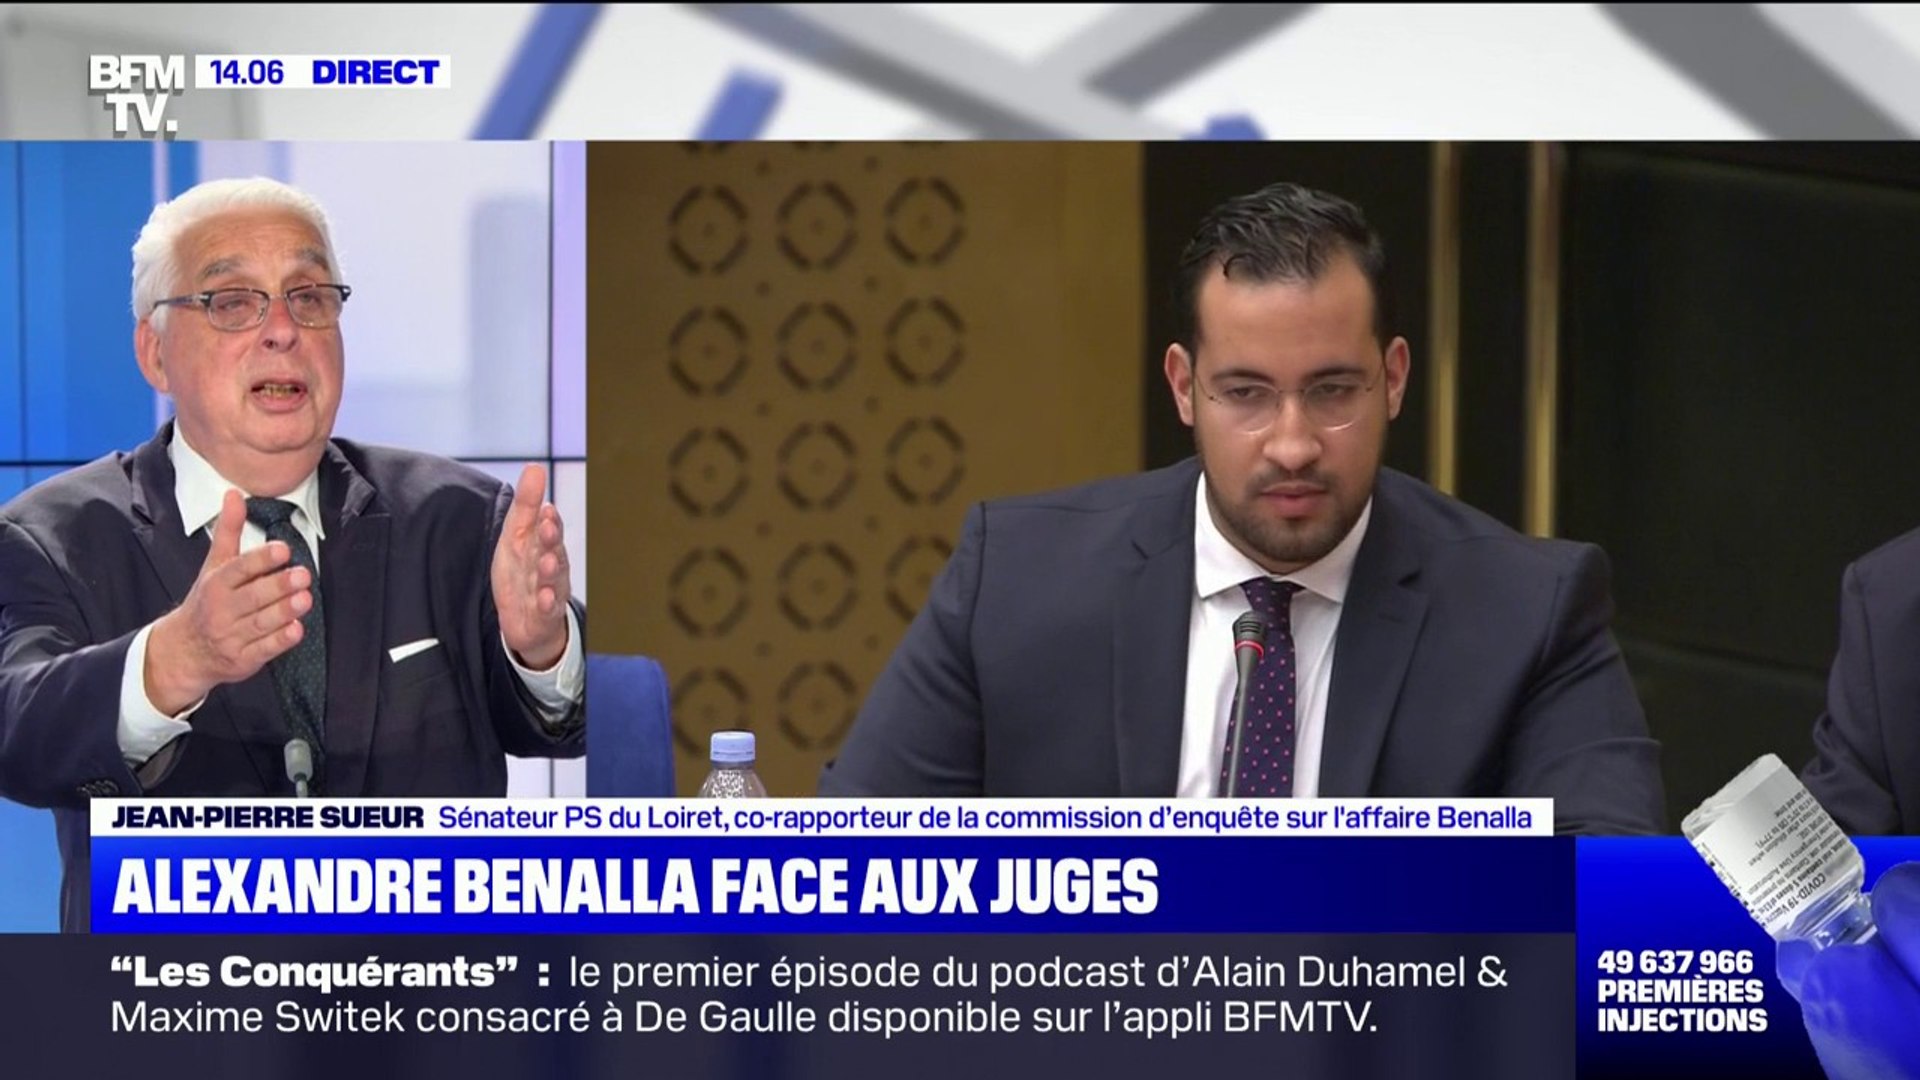 Jean-Pierre Sueur, Sénateur PS du Loiret: "Il y aura un avant et un après  rapport Benalla" - Vidéo Dailymotion